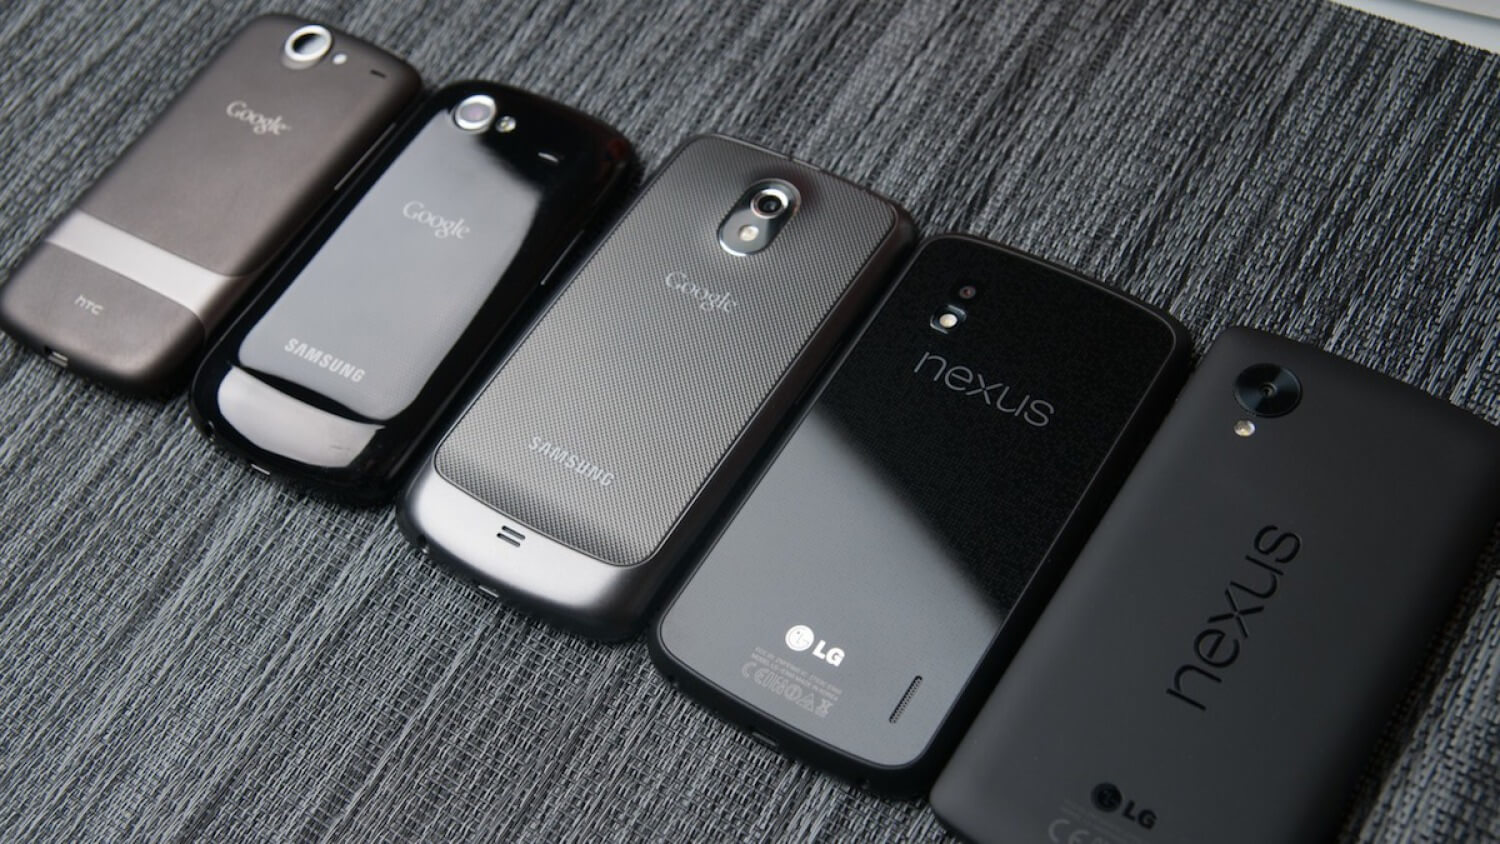 Что хотелось бы увидеть в Nexus 6? Функциональный чехол. Фото.